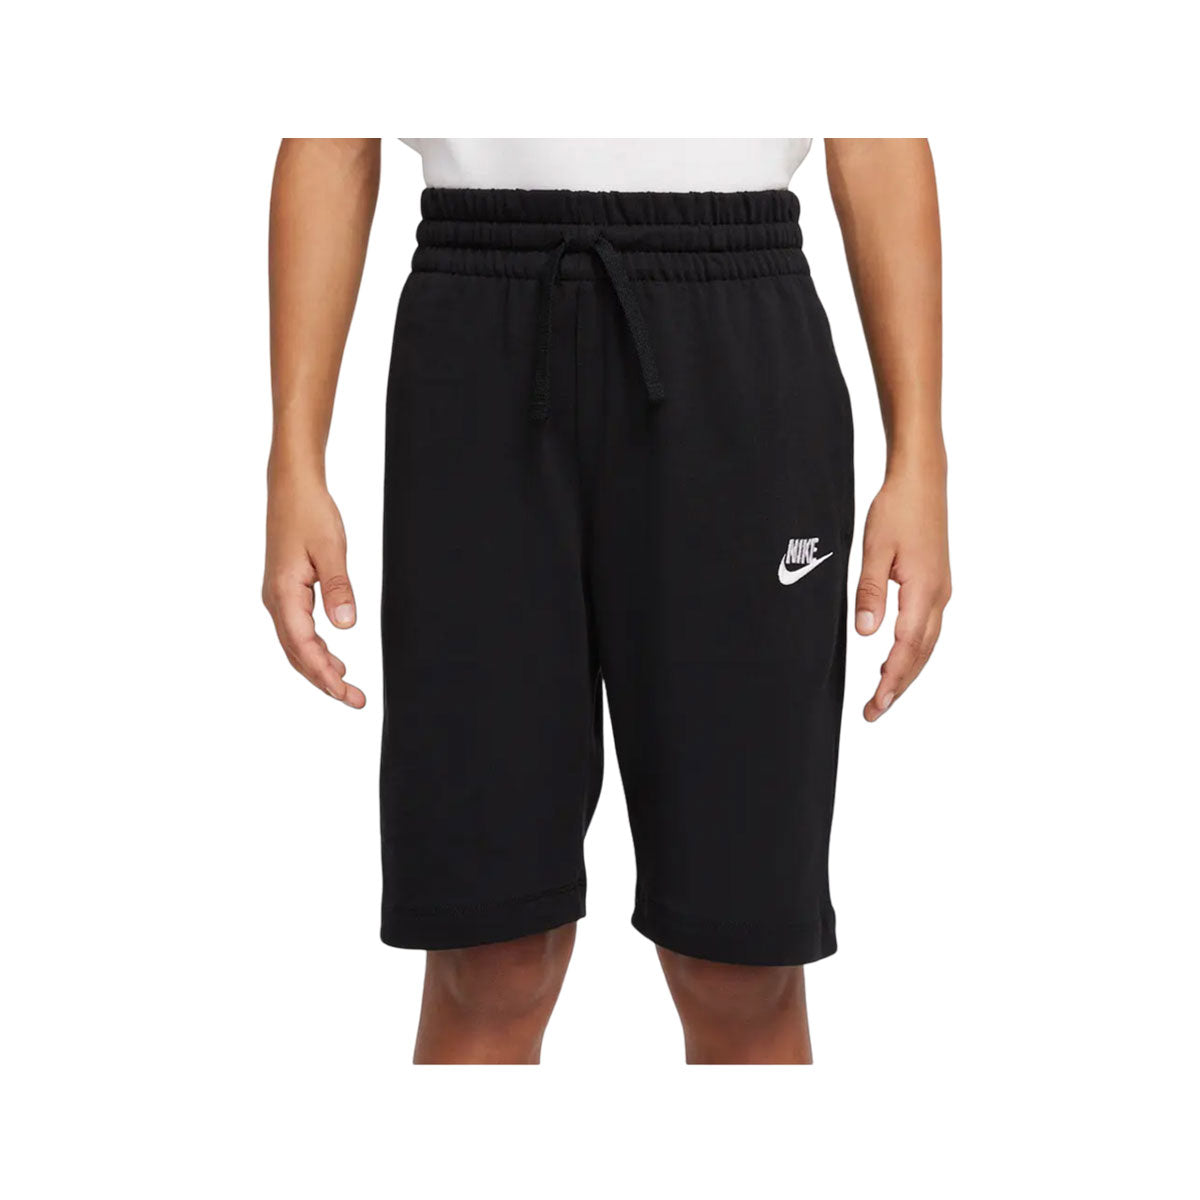 Nike Boy's Cotton Shorts